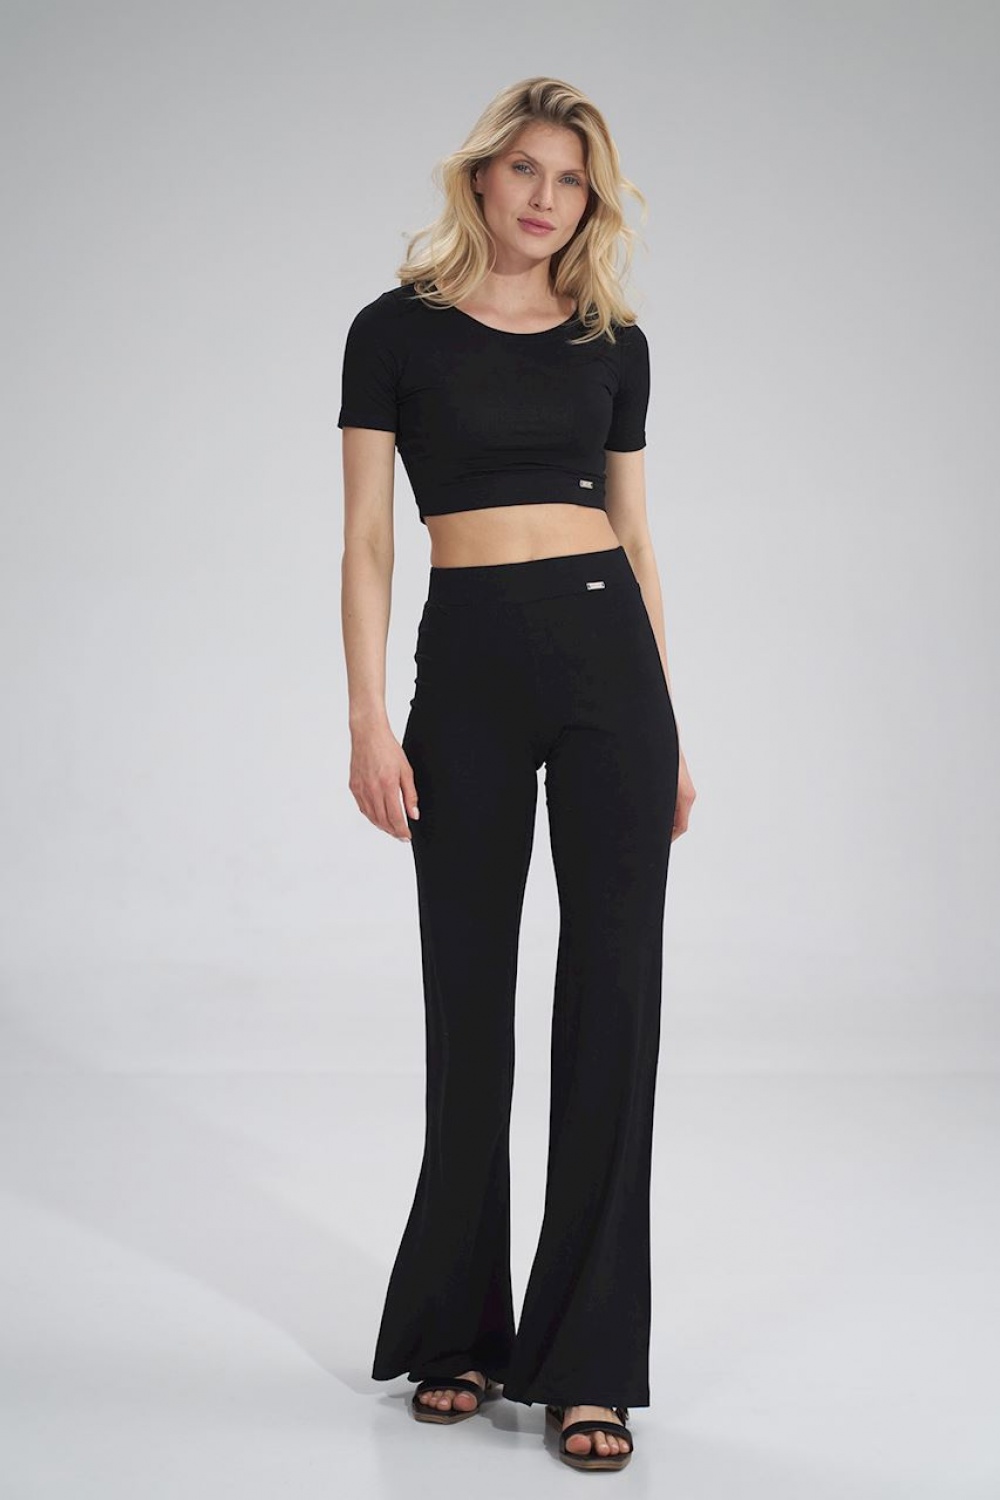  Women trousers model 154714 Figl  black